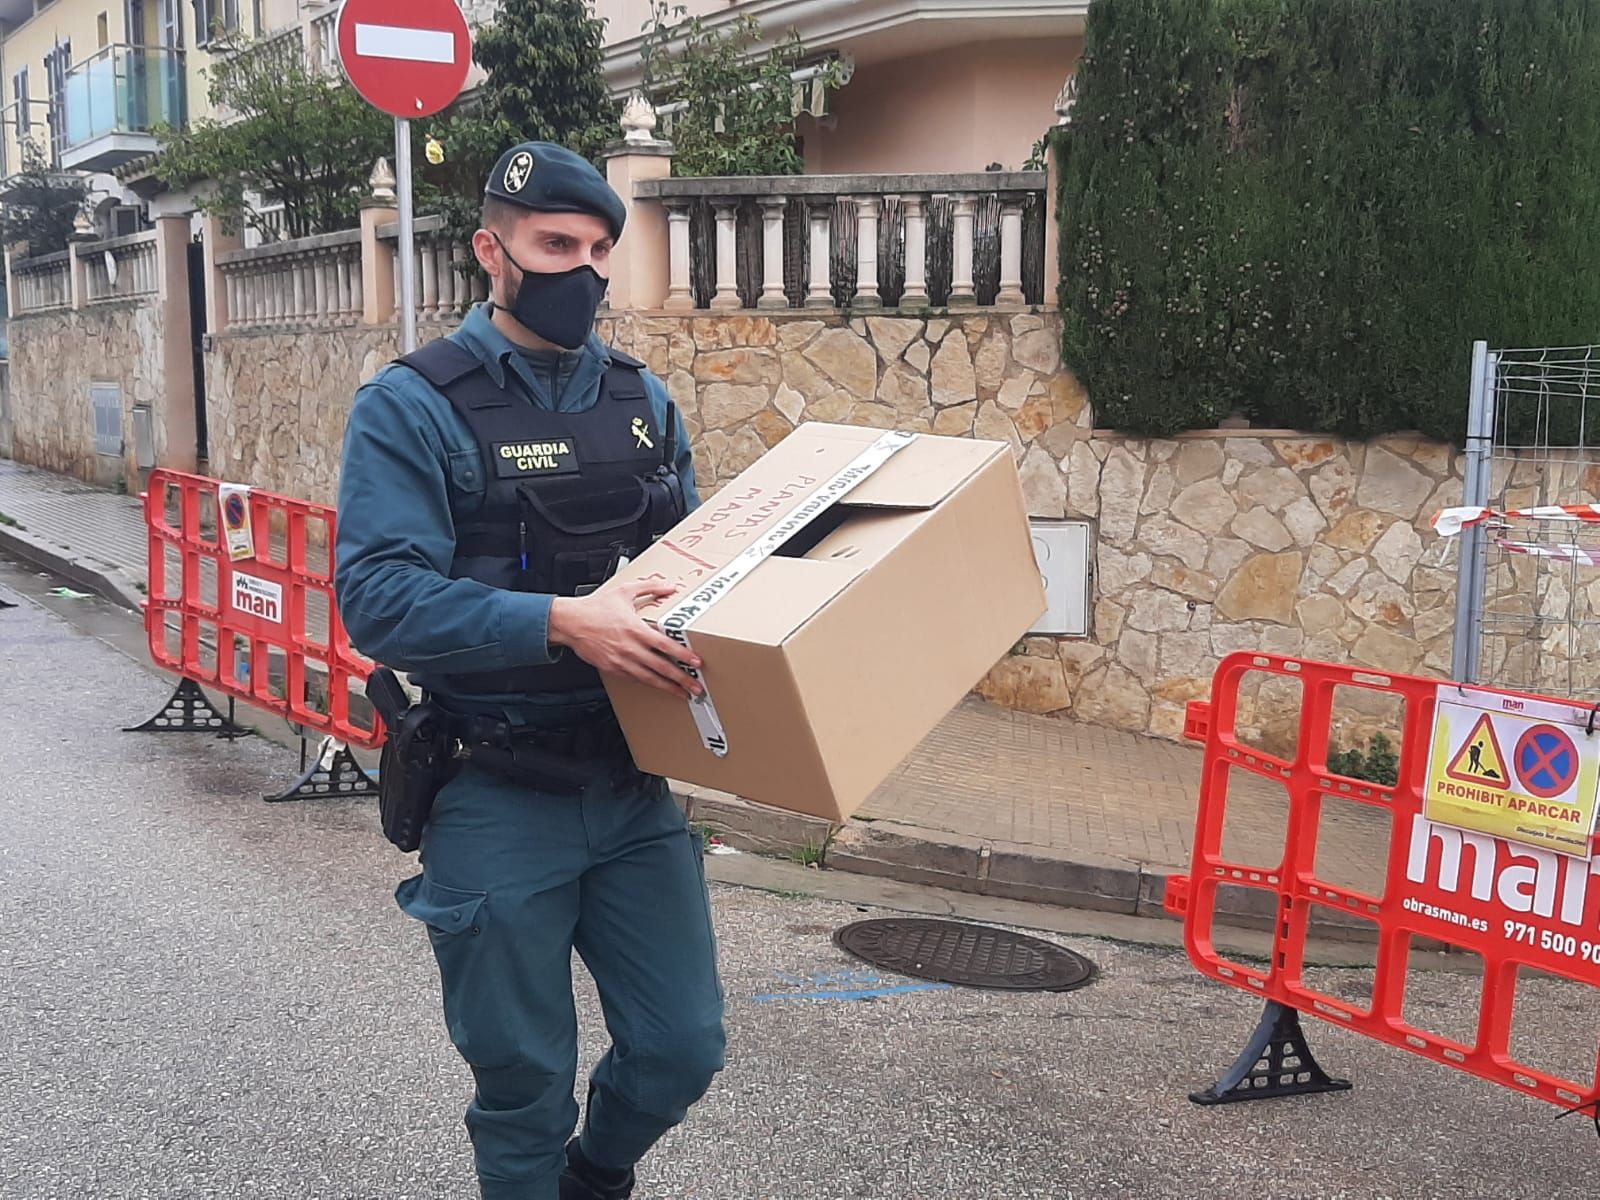 Decenas de detenidos en una gran operación antidroga en Palma